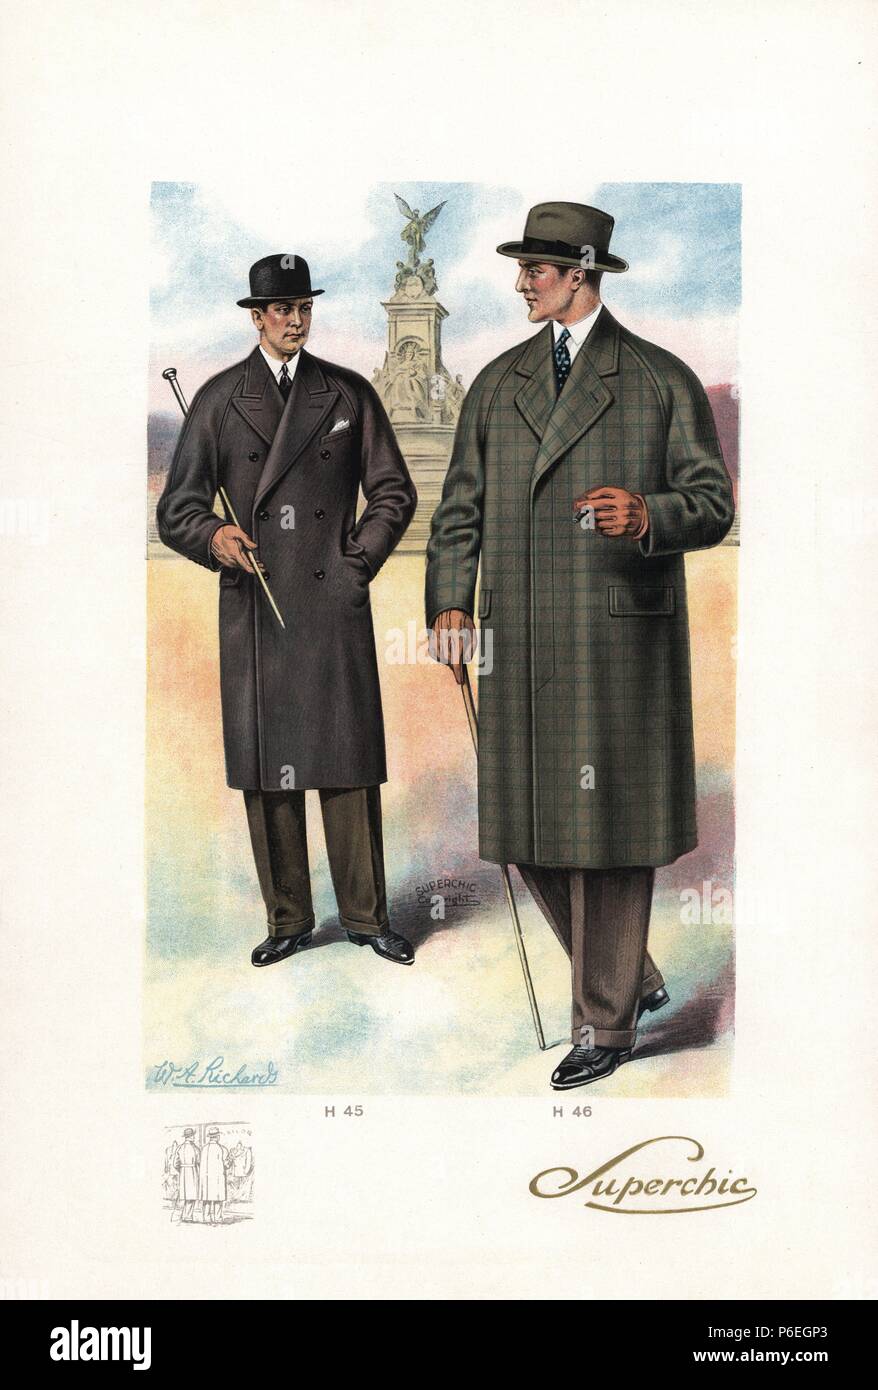 L'homme à long double-breasted manteau de ville avec chapeau melon et canne  à sucre, et l'homme en simple-breasted manteau Raglan avec canne. Dans  l'arrière-plan est le Victoria Mémorial sur le Mall. Gravure